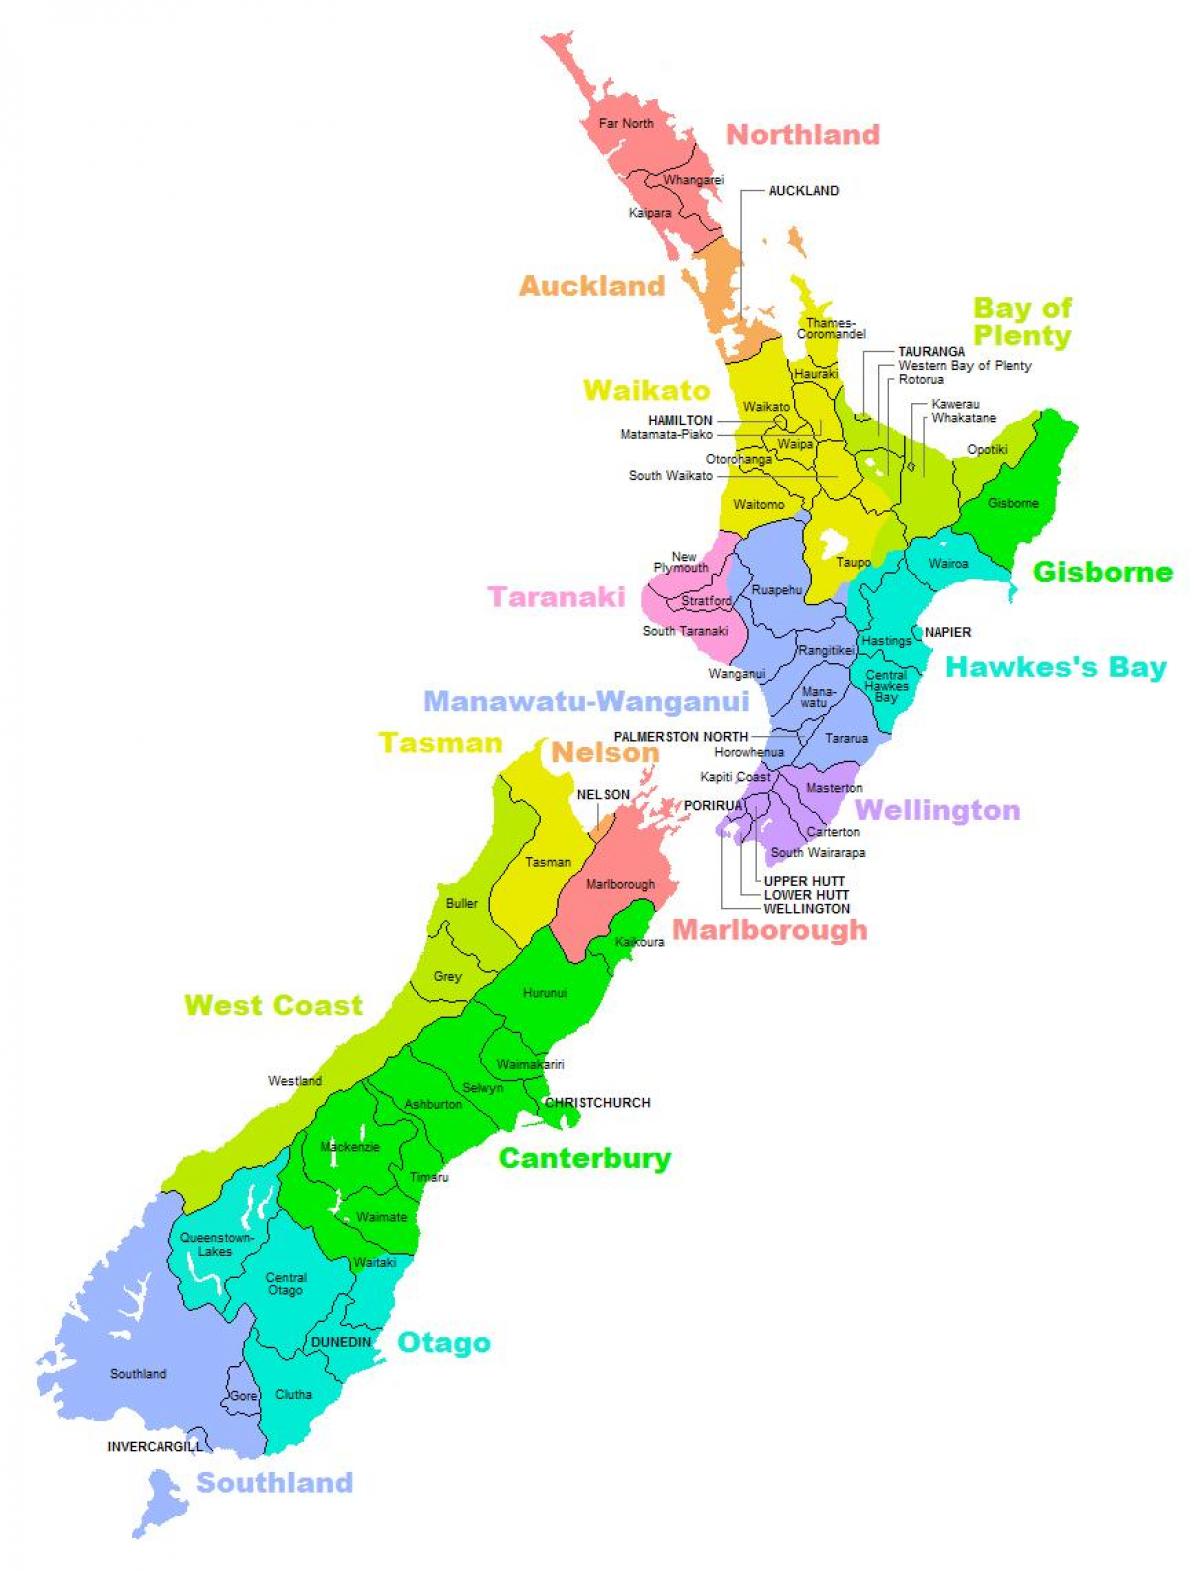 نیوزیلند نقشه منطقه